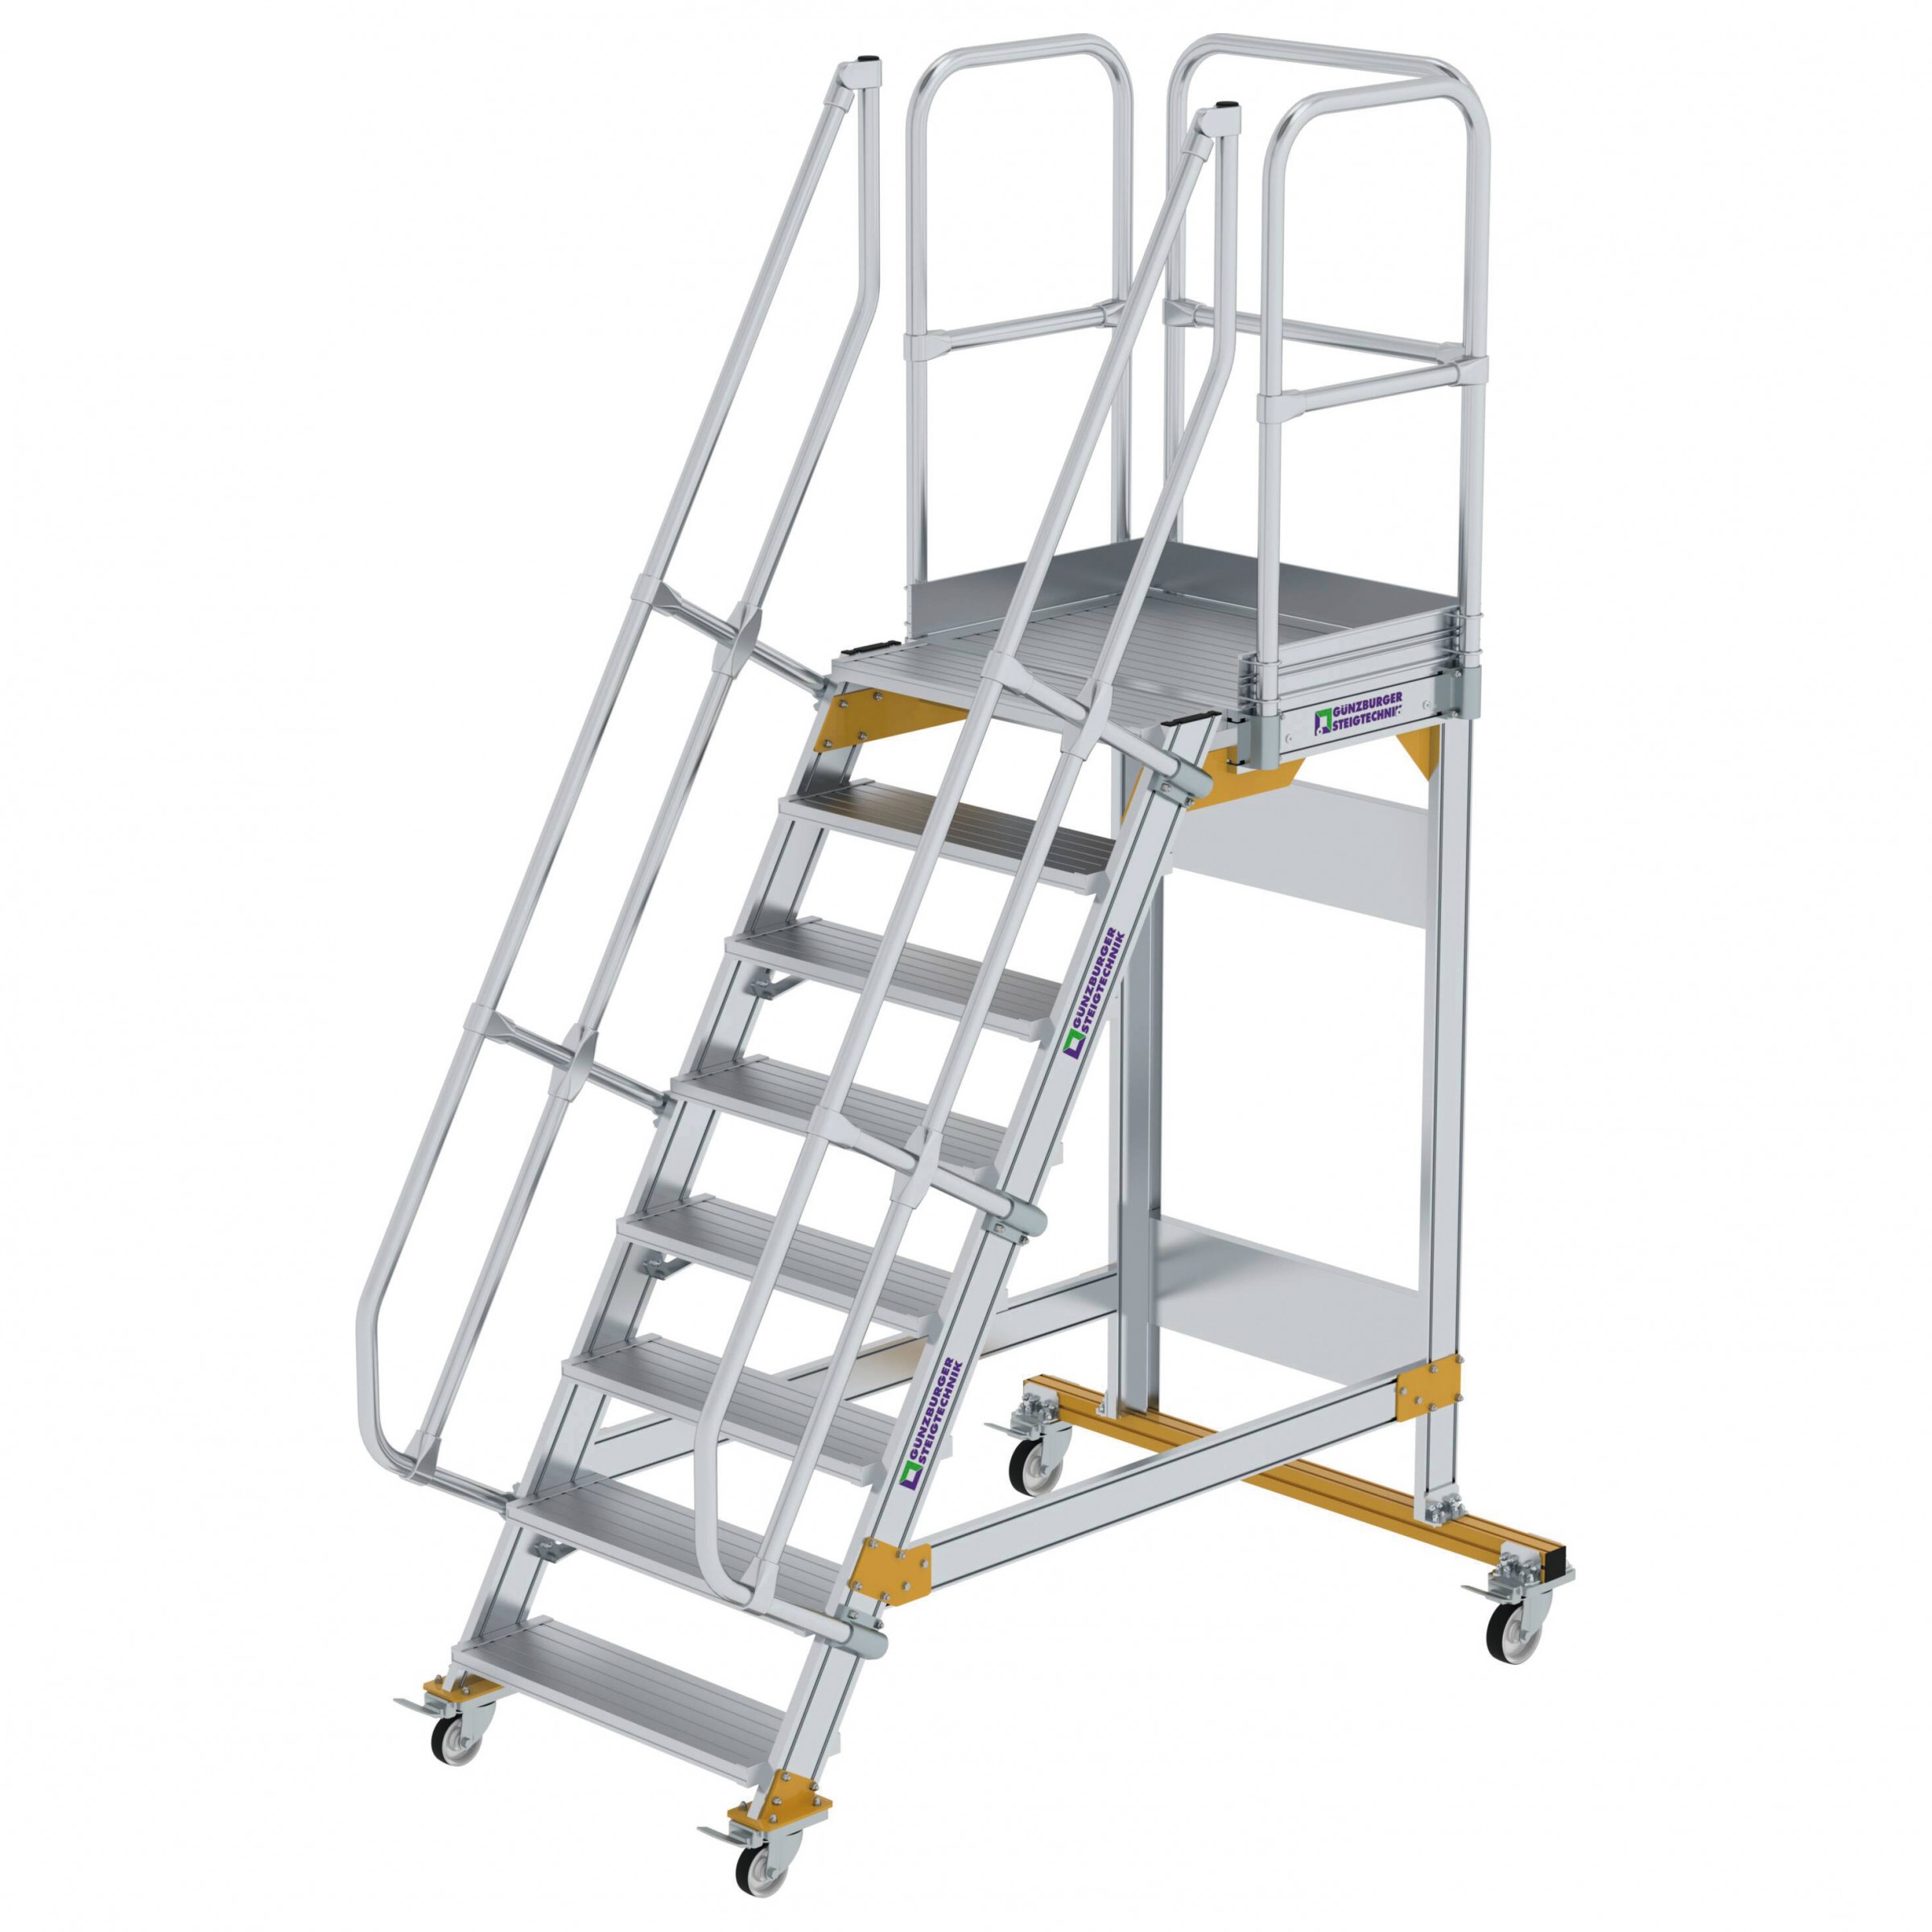 Aluminium-Plattform-Treppe fahrbar 60°, Stufenbreite 800 mm, 5 Stufen